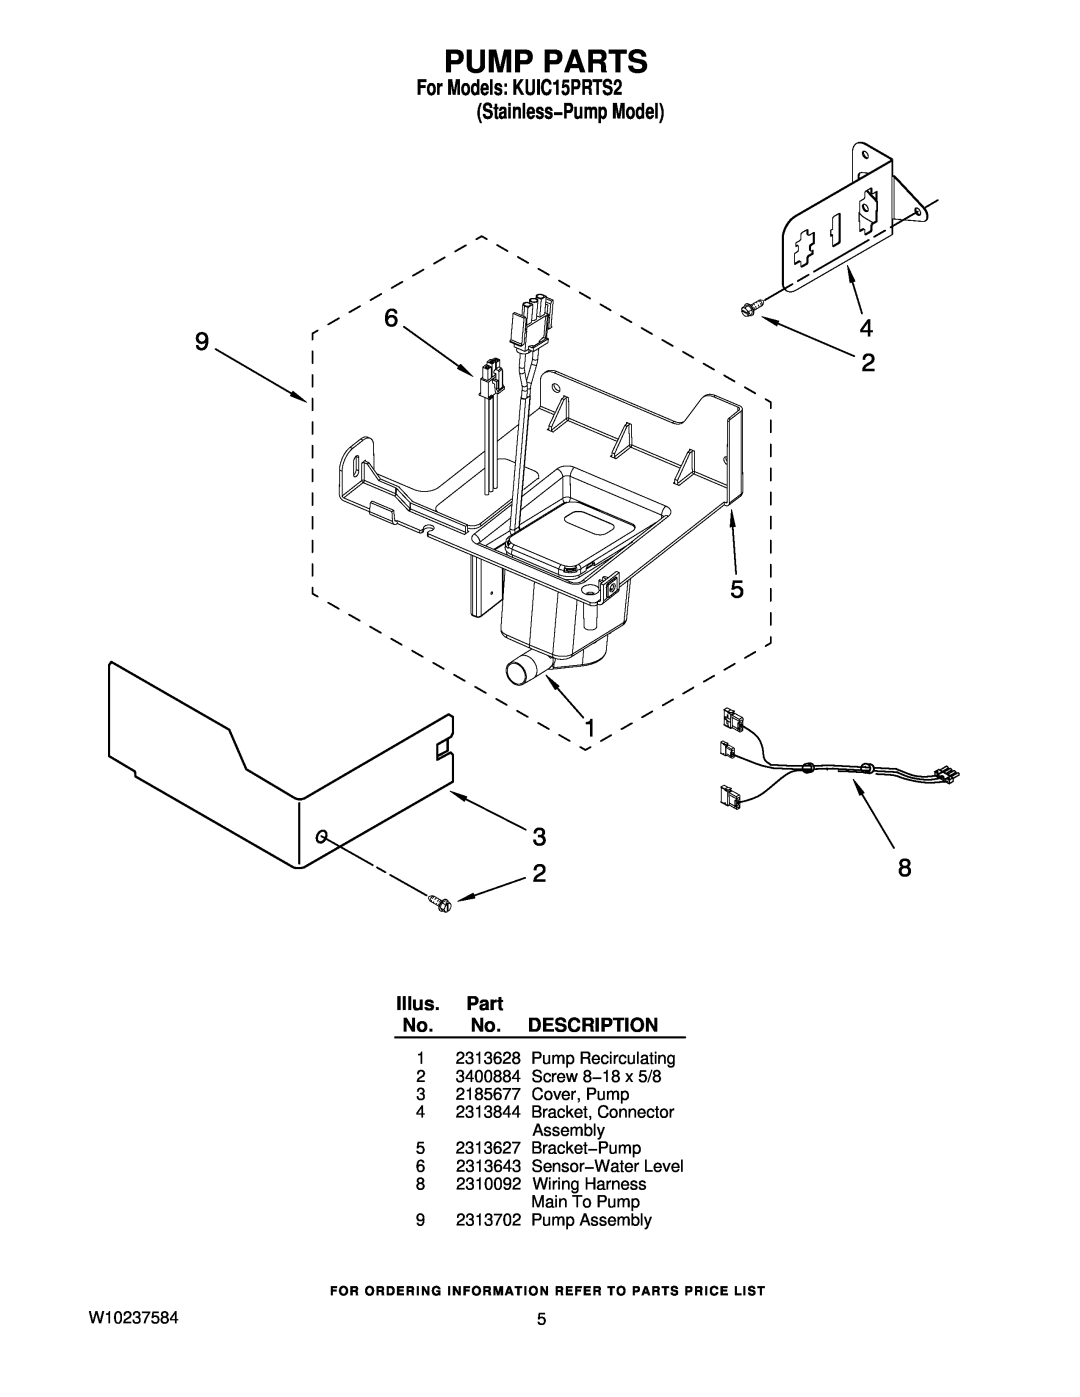 KitchenAid manual Pump Parts, Illus. Part No. No. DESCRIPTION, For Models KUIC15PRTS2 Stainless−Pump Model 